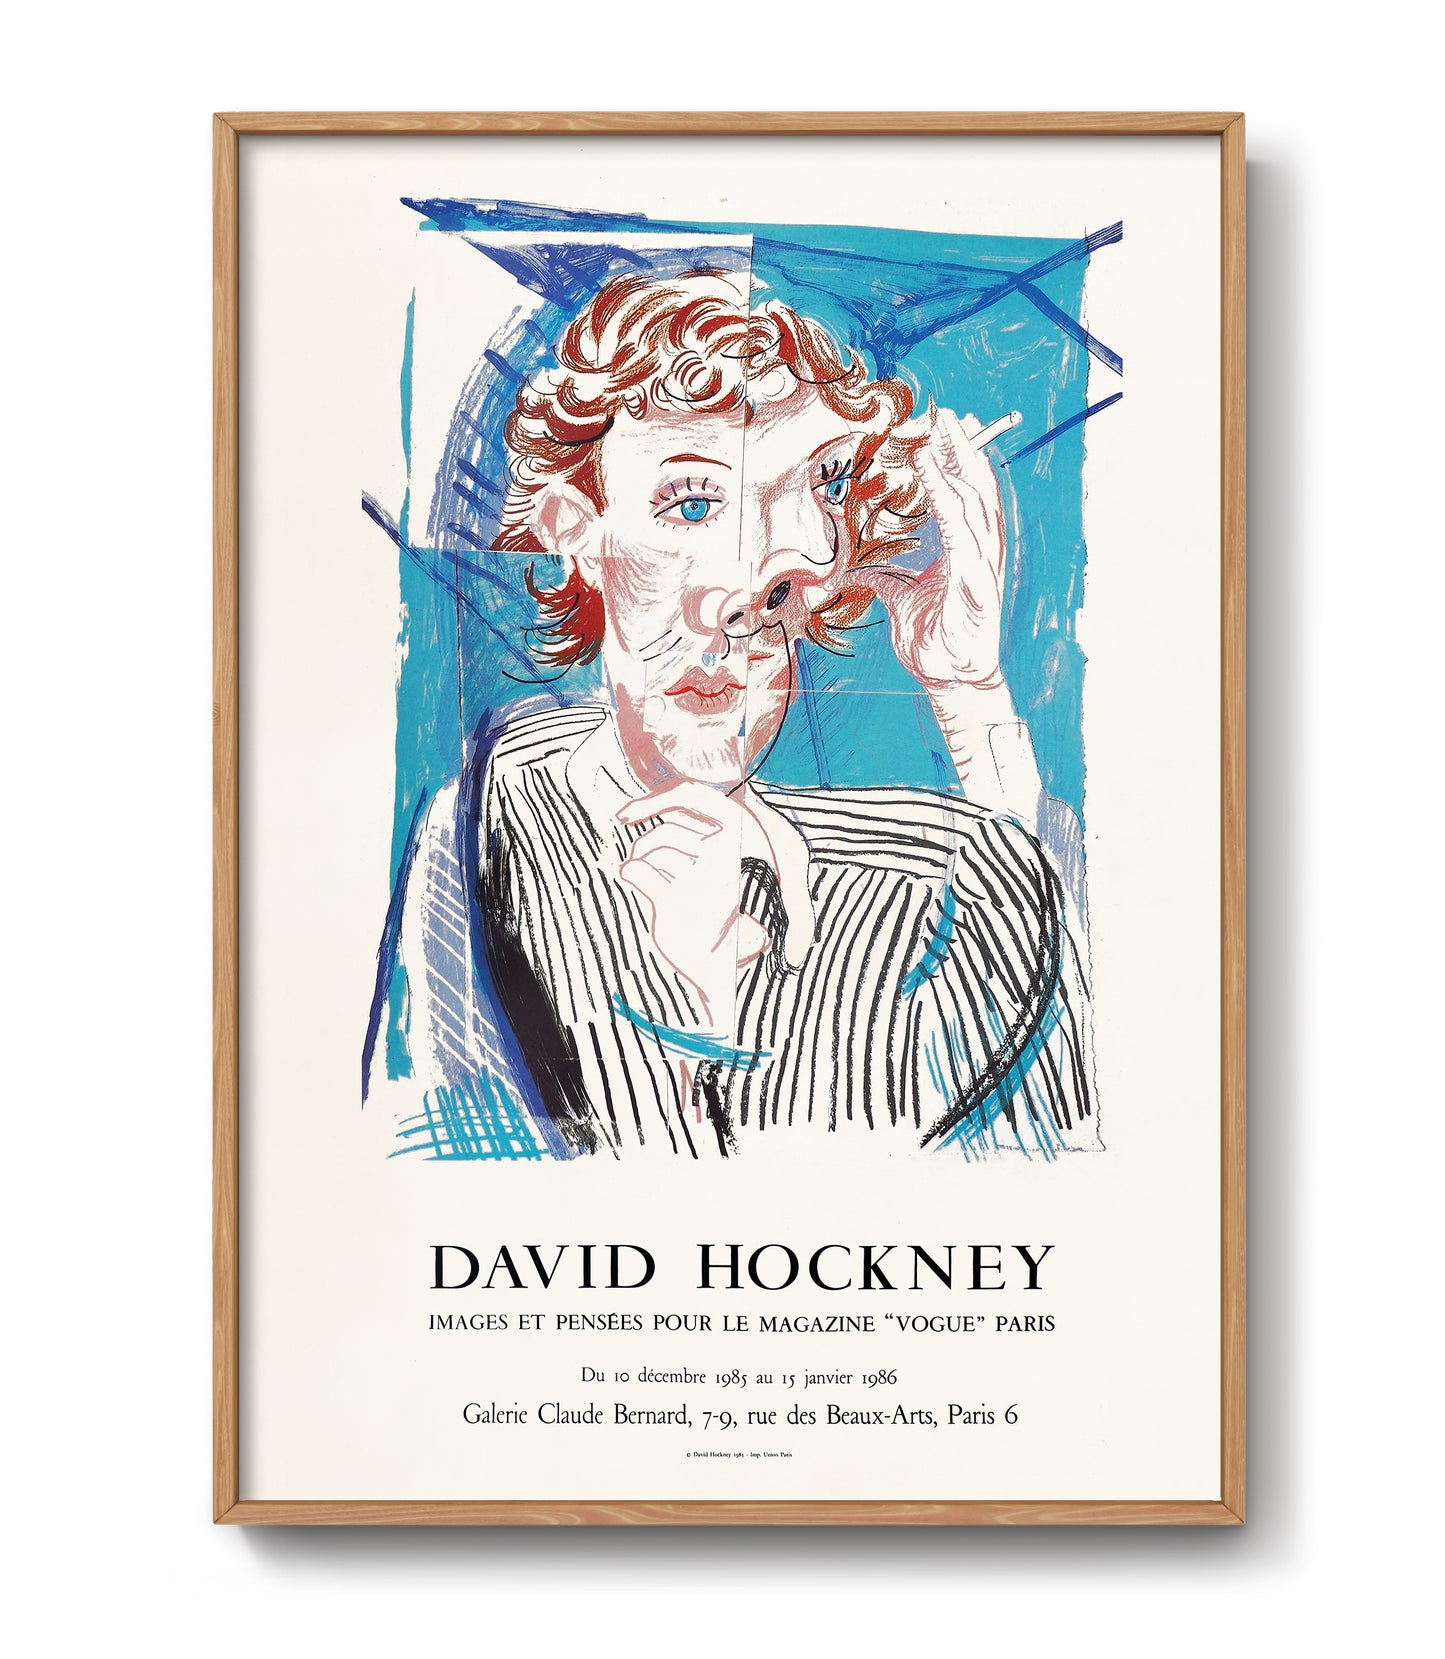 David Hockney exhibition poster